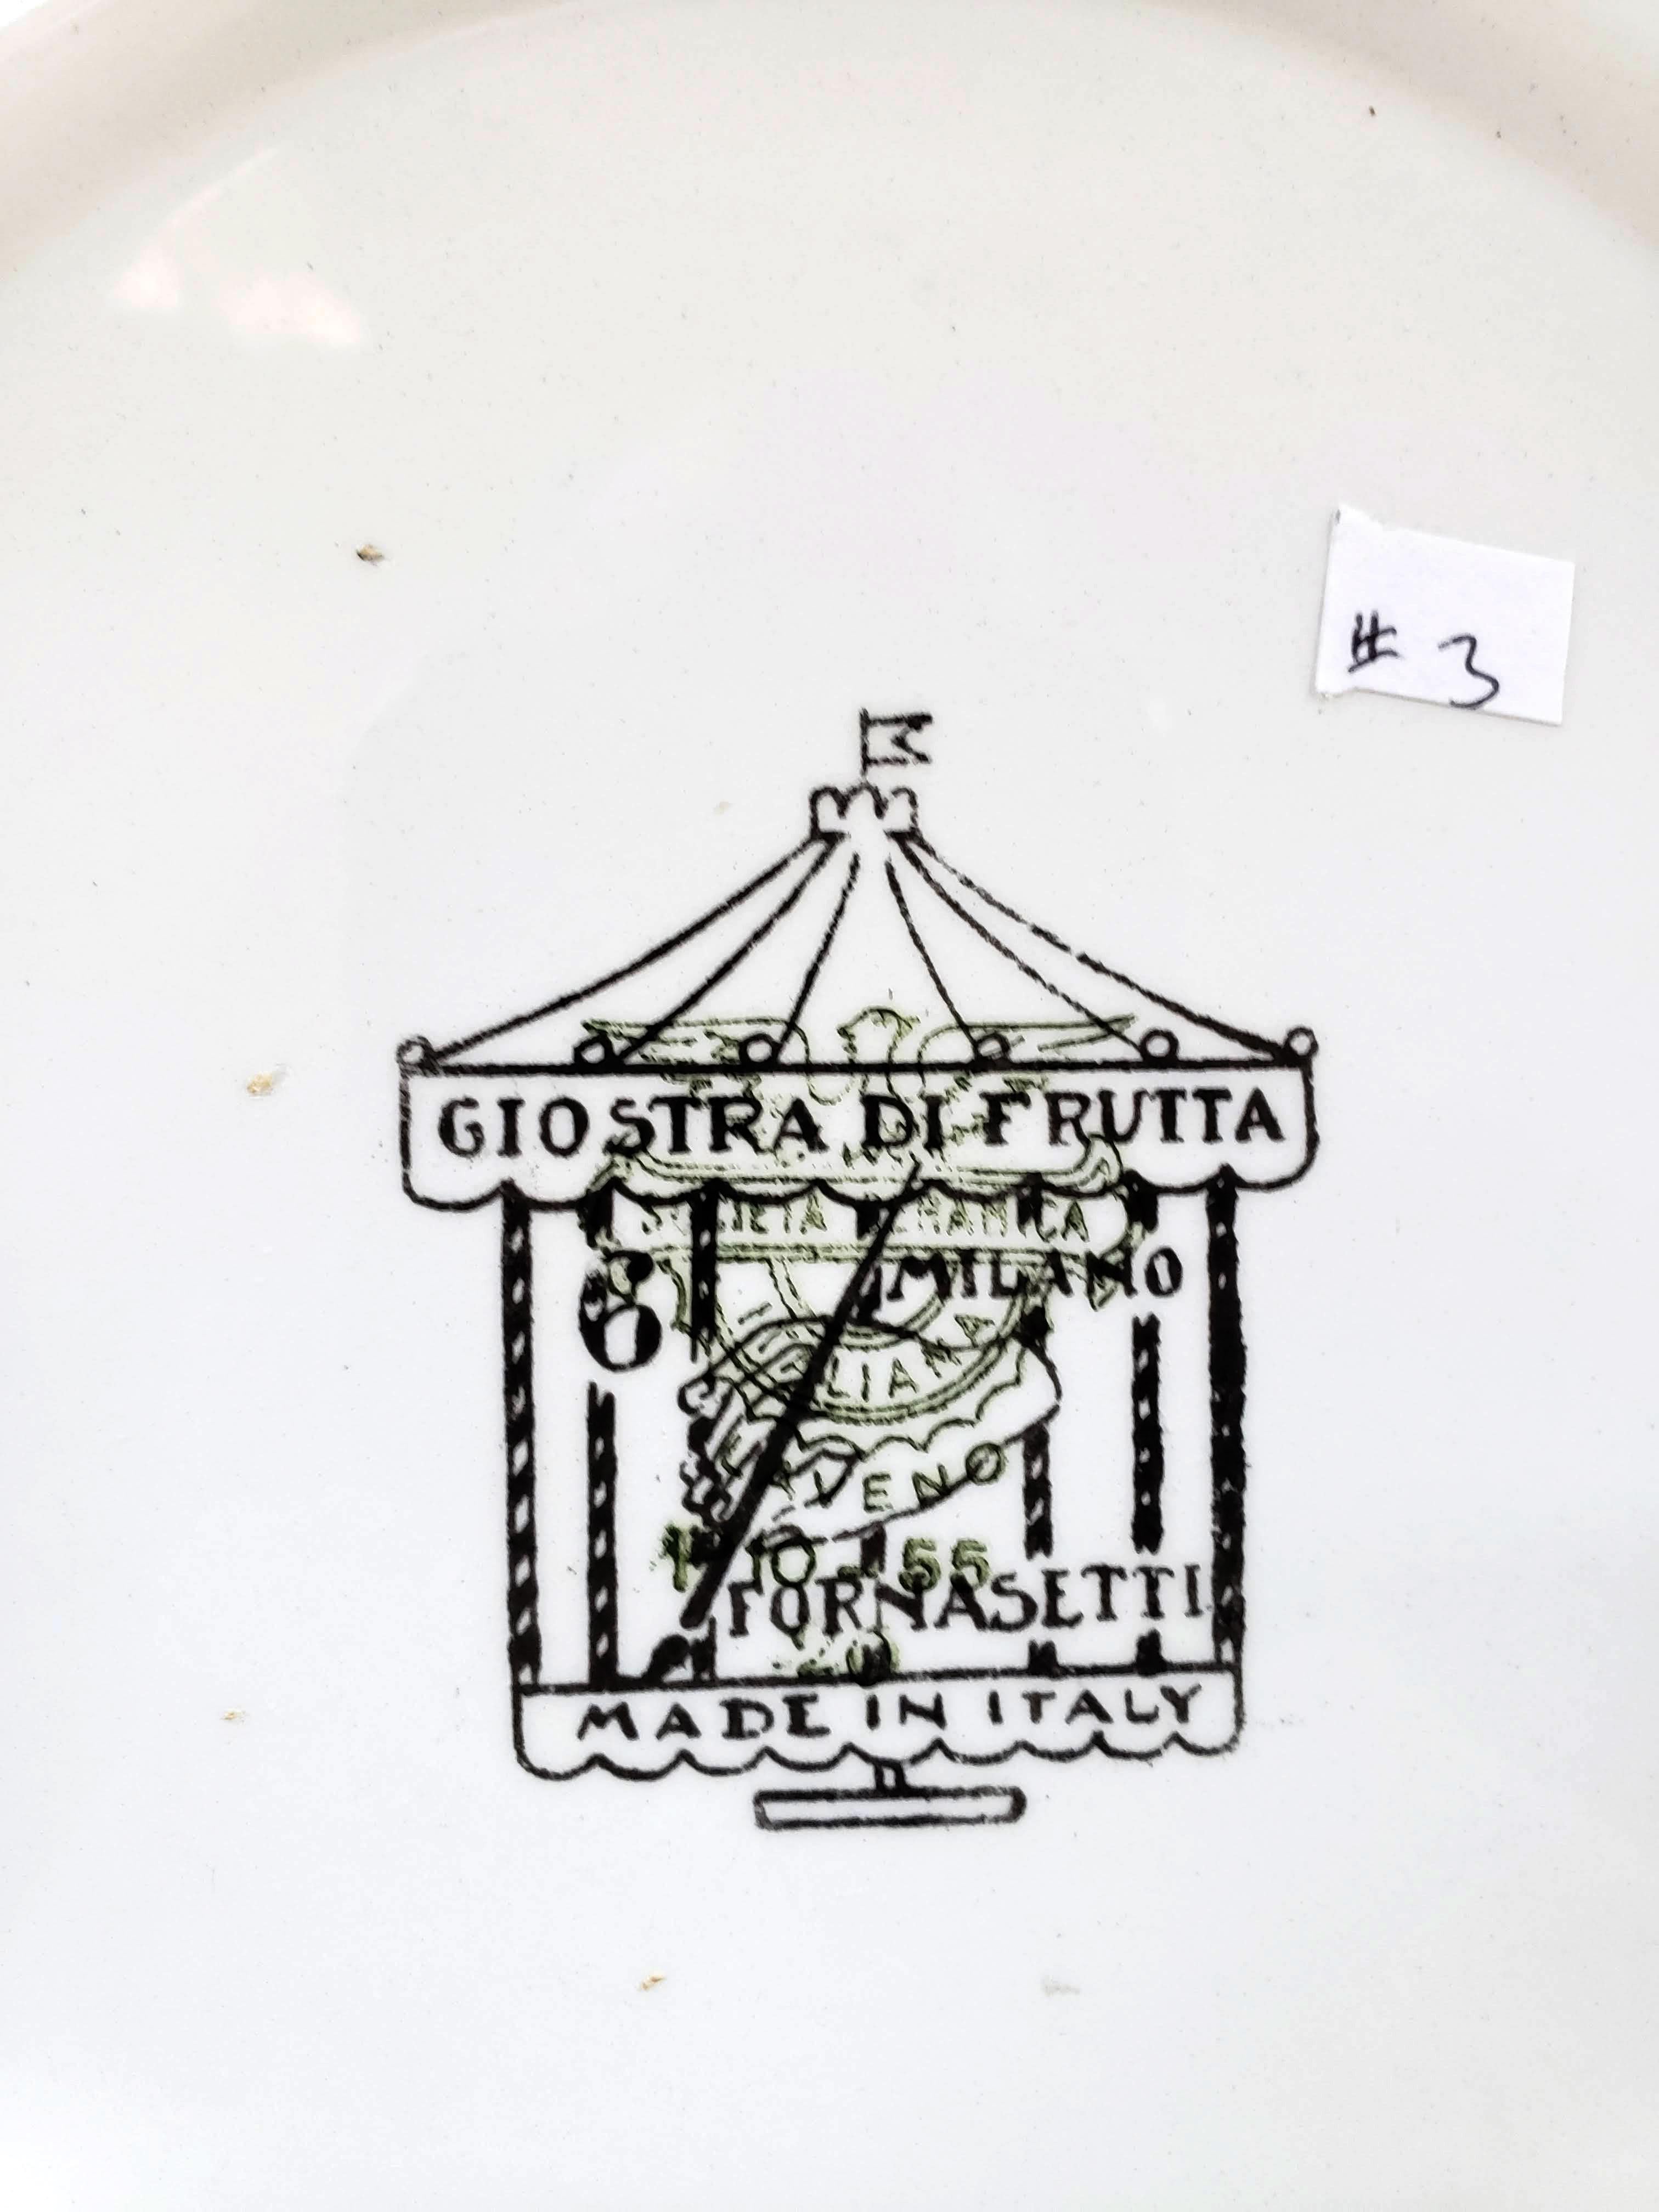 Remarkable Rare Set of Four Piero Fornasetti Giostra di Frutta Pattern Plates 2